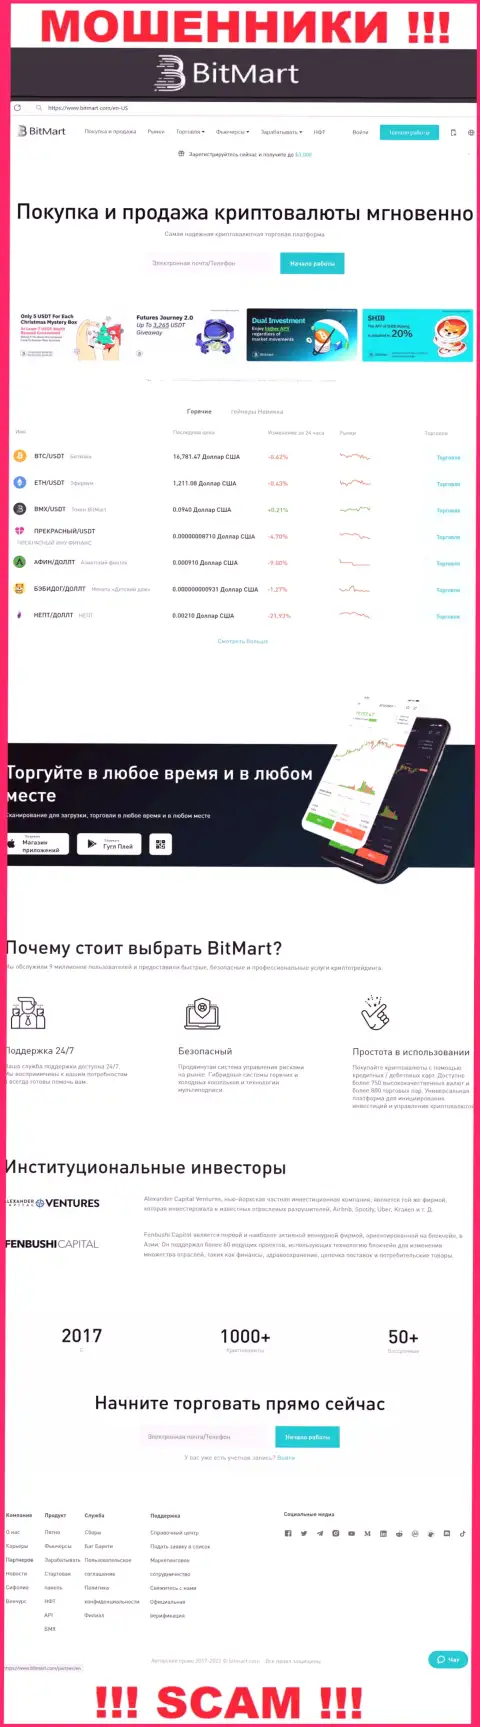 Внешний вид официального сайта мошеннической организации BitMart Com